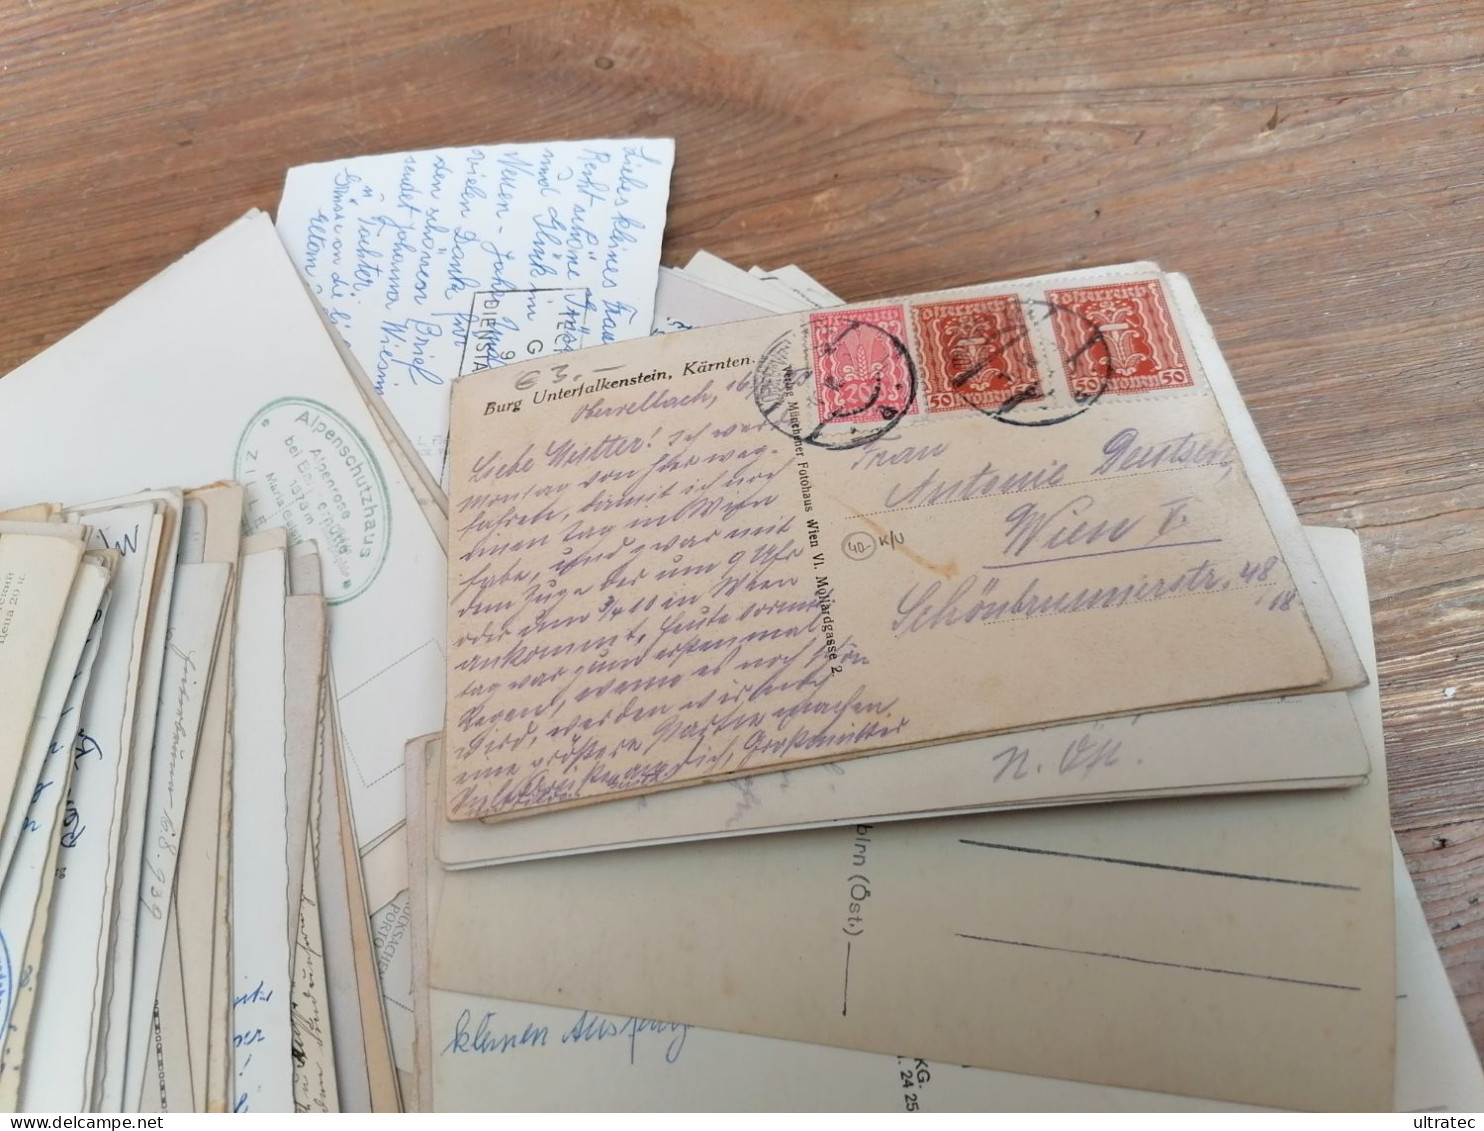 122 Stück alte AK Postkarten "ÖSTERREICH" Ansichtskarten Lot Sammlung Konvolut Posten